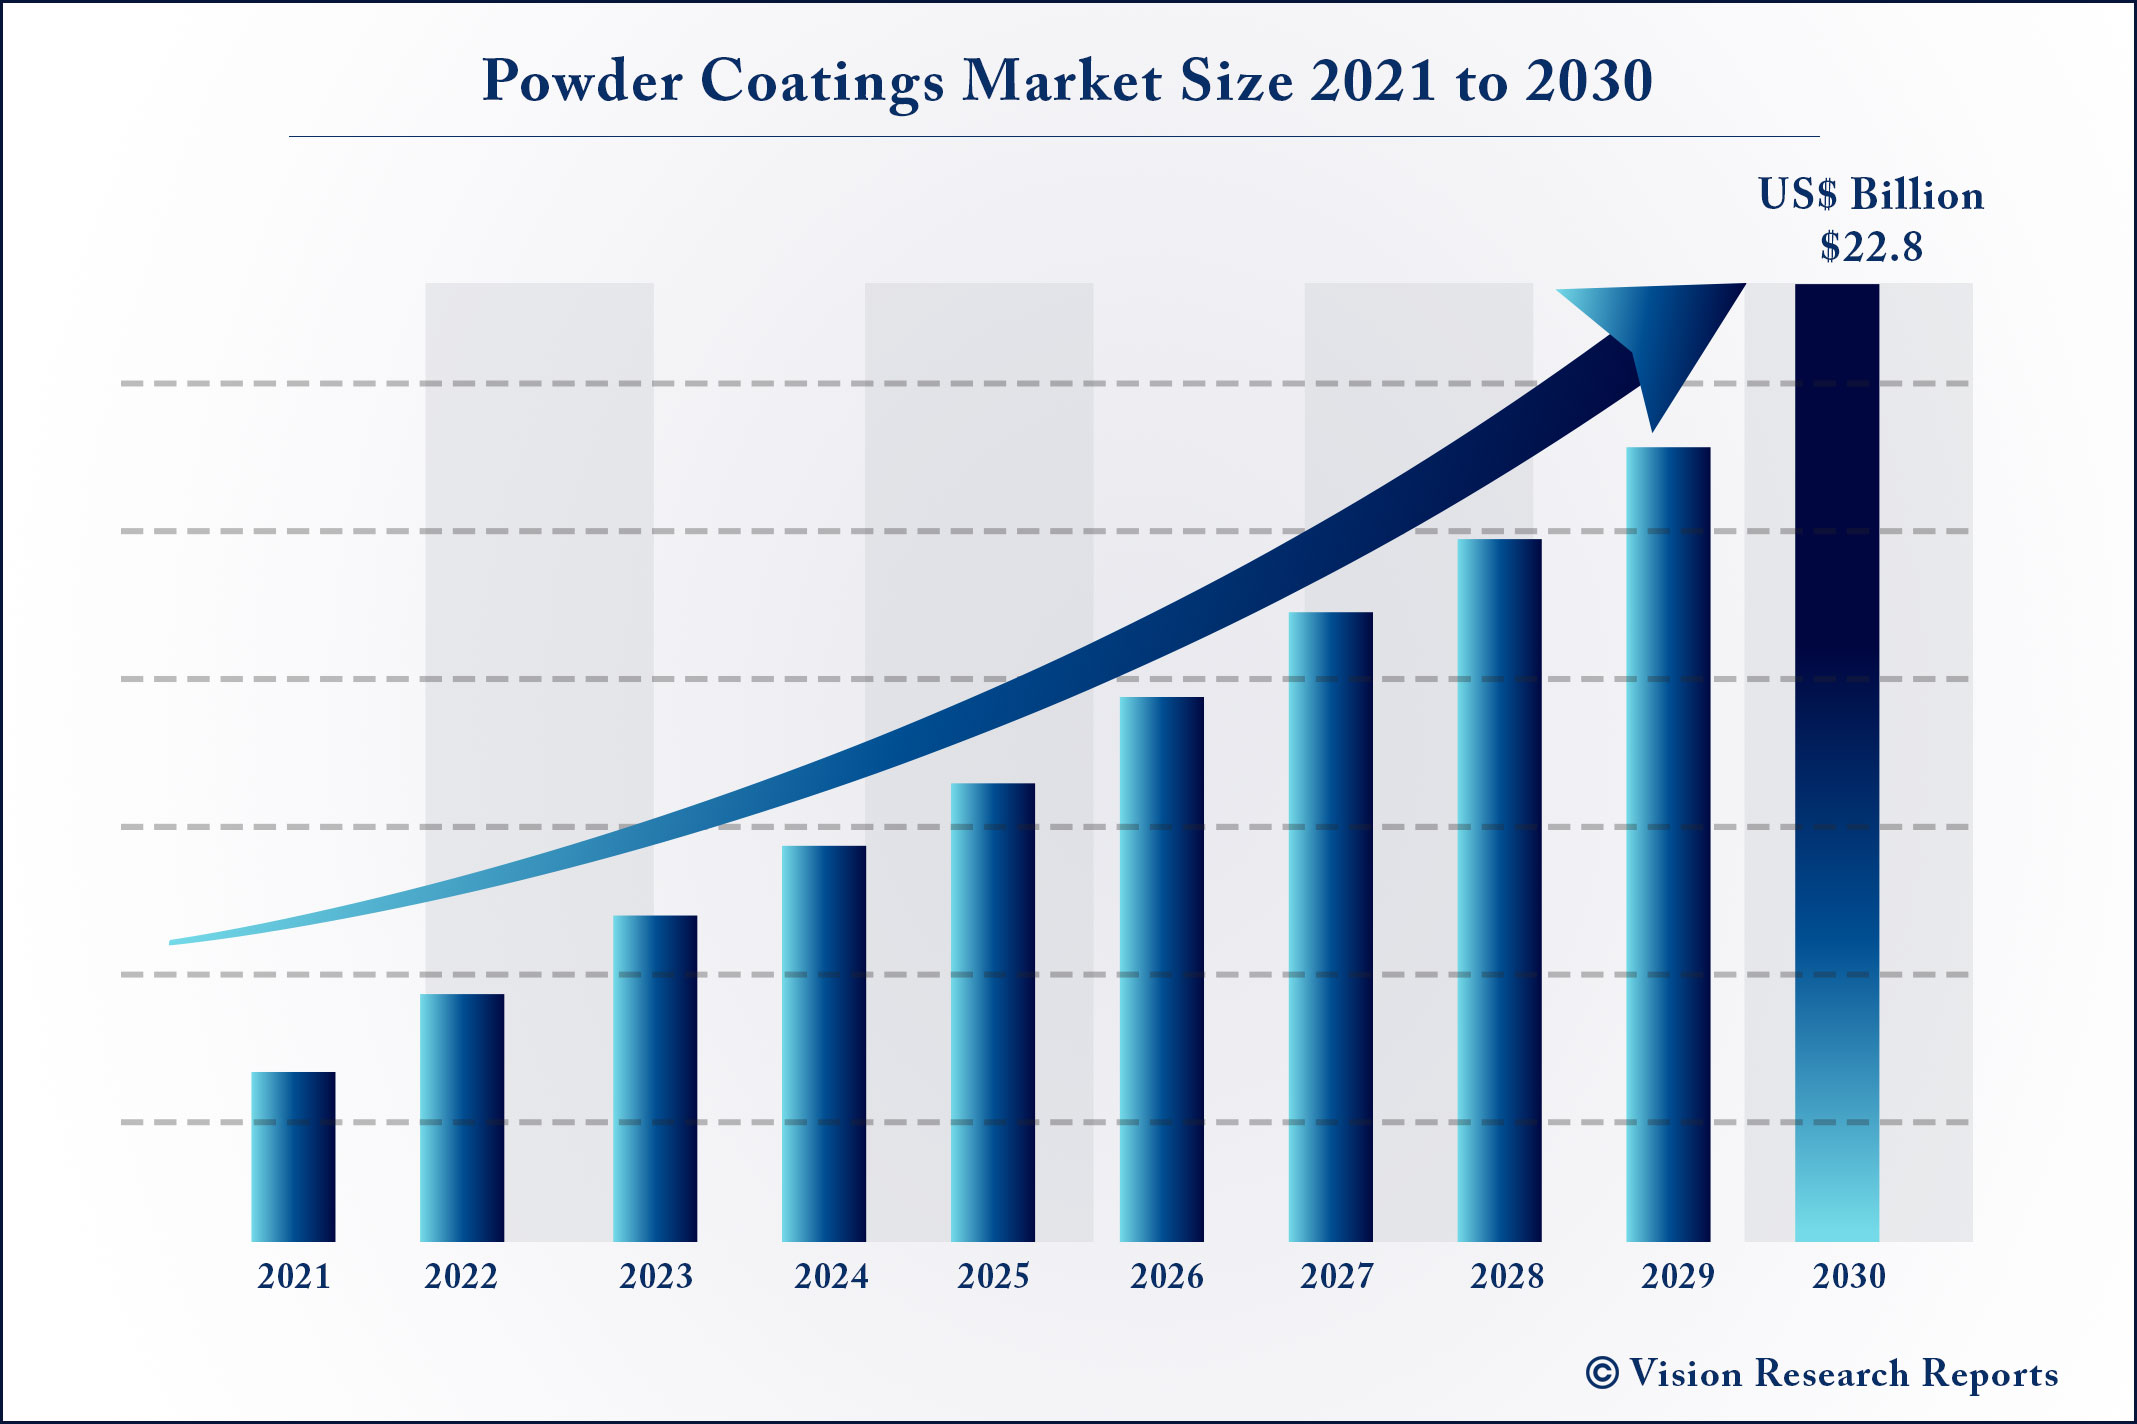 Powder Coatings Market Size 2021 to 2030